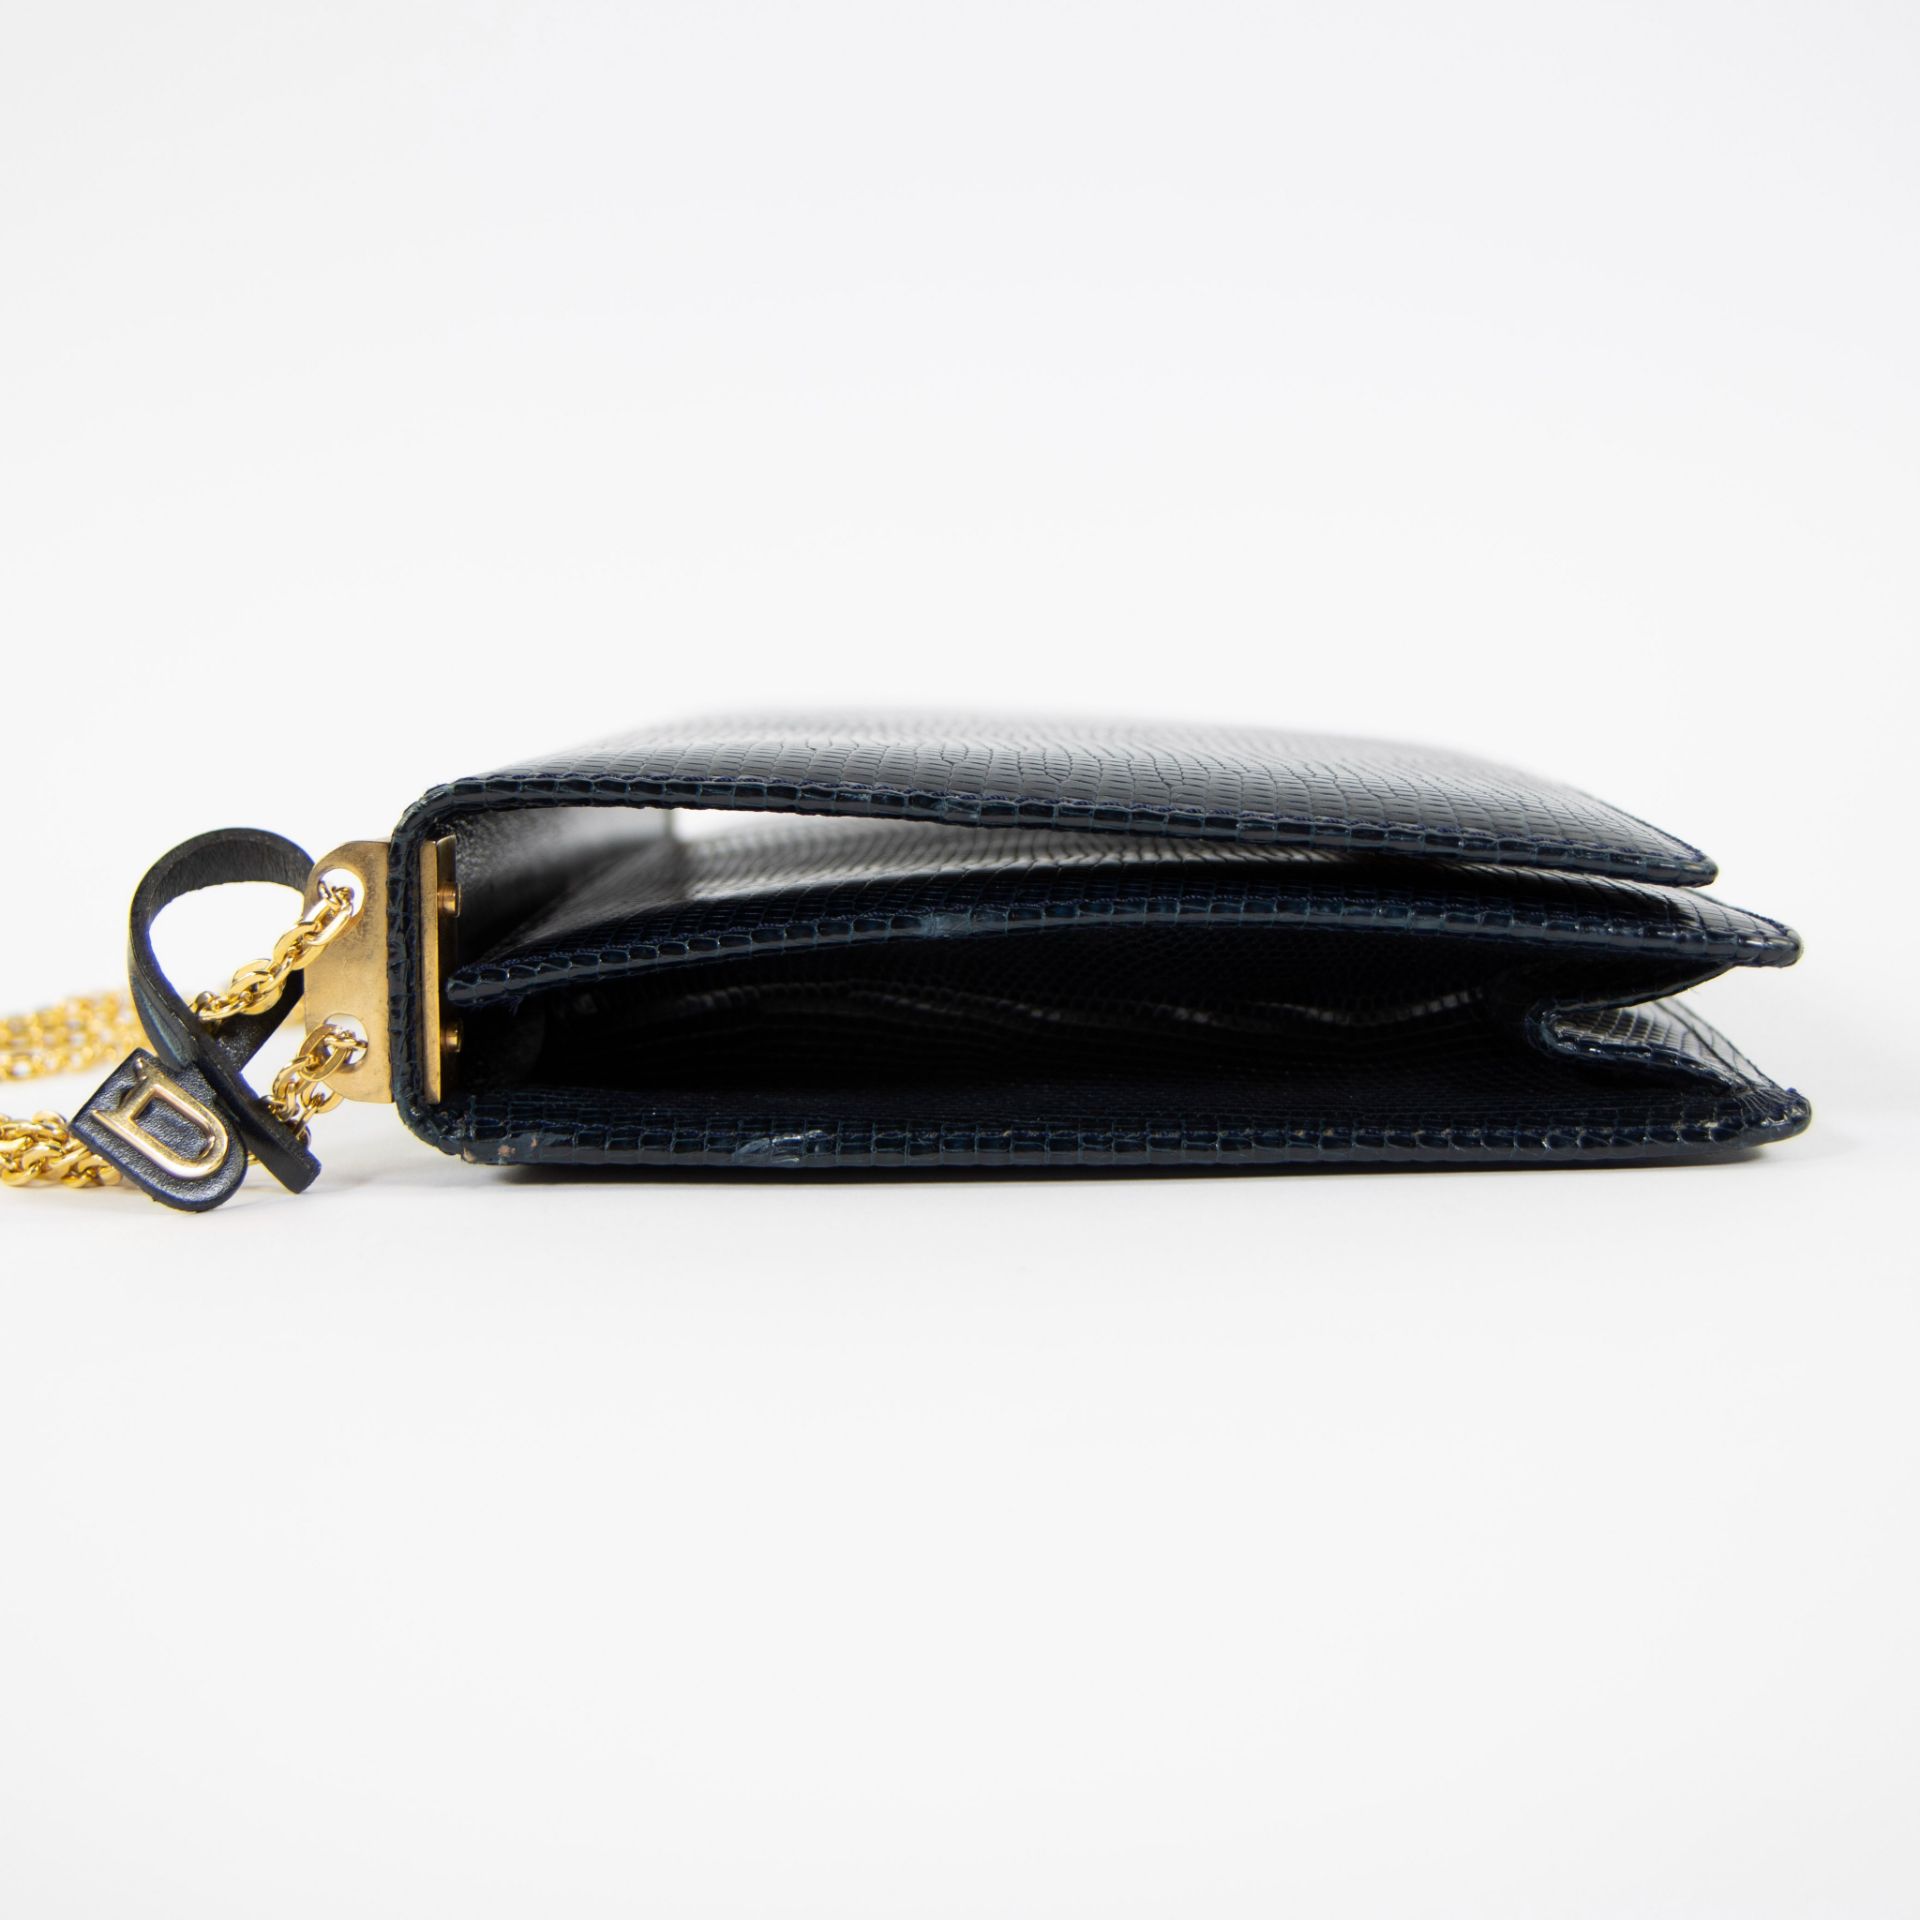 Vintage Delvaux handbag in crocodile - Image 5 of 6